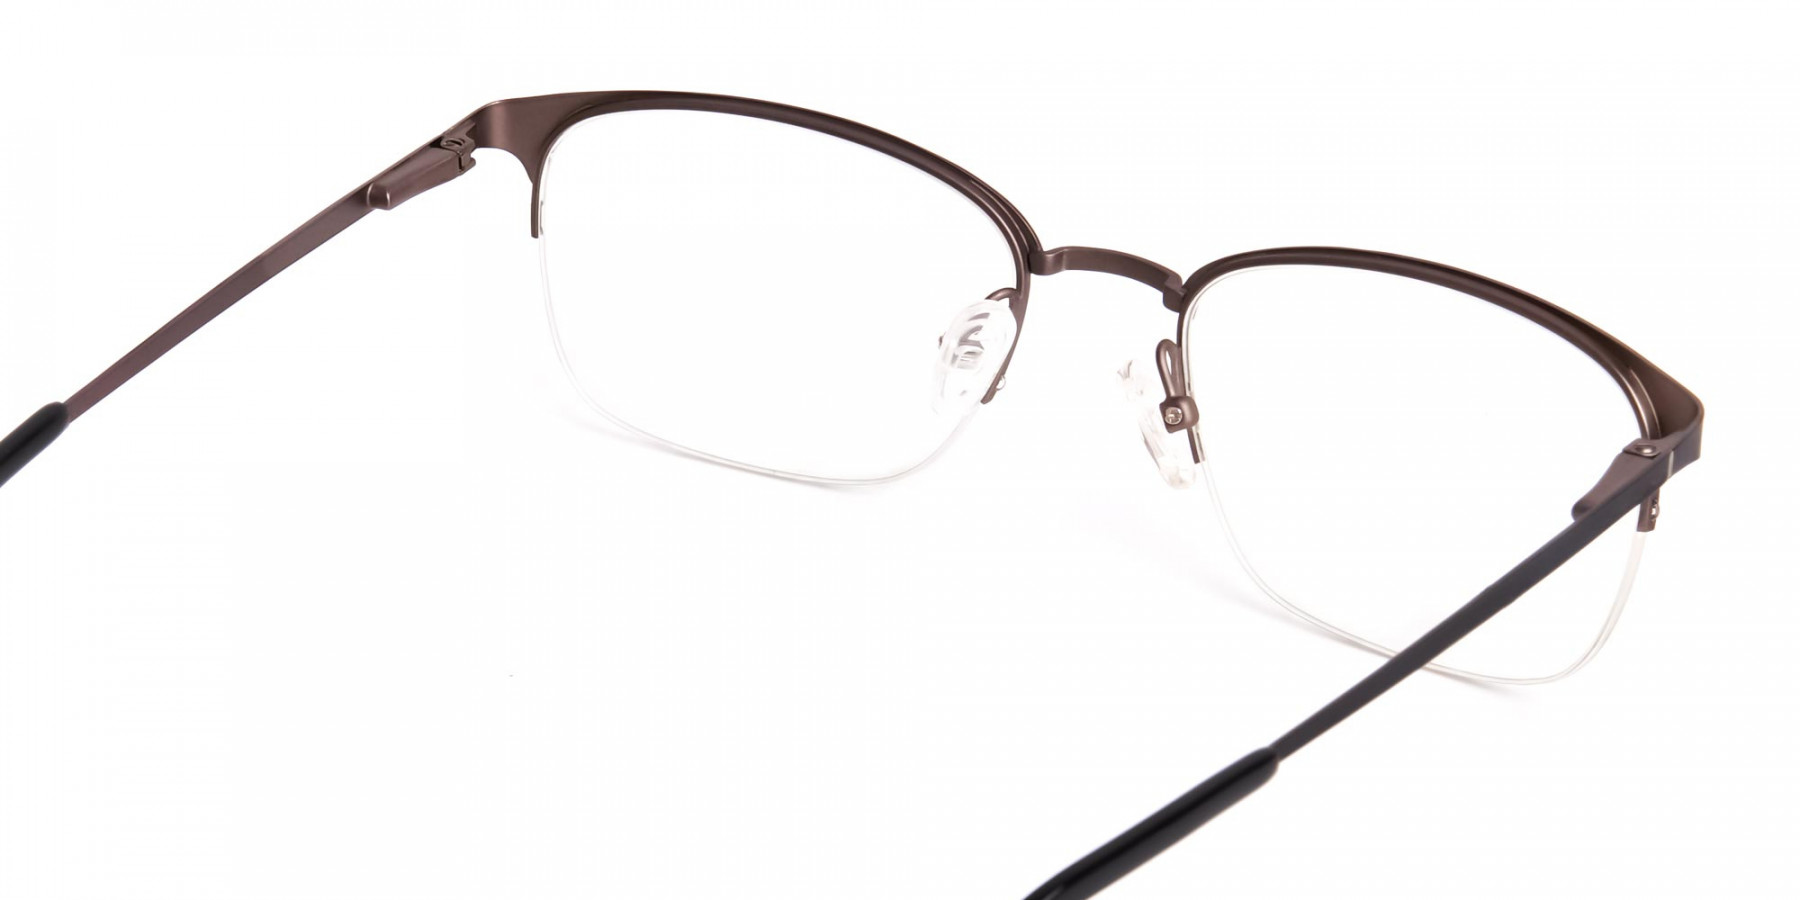 oval-and-rectangular-black-full-rim-glasses-frames-1